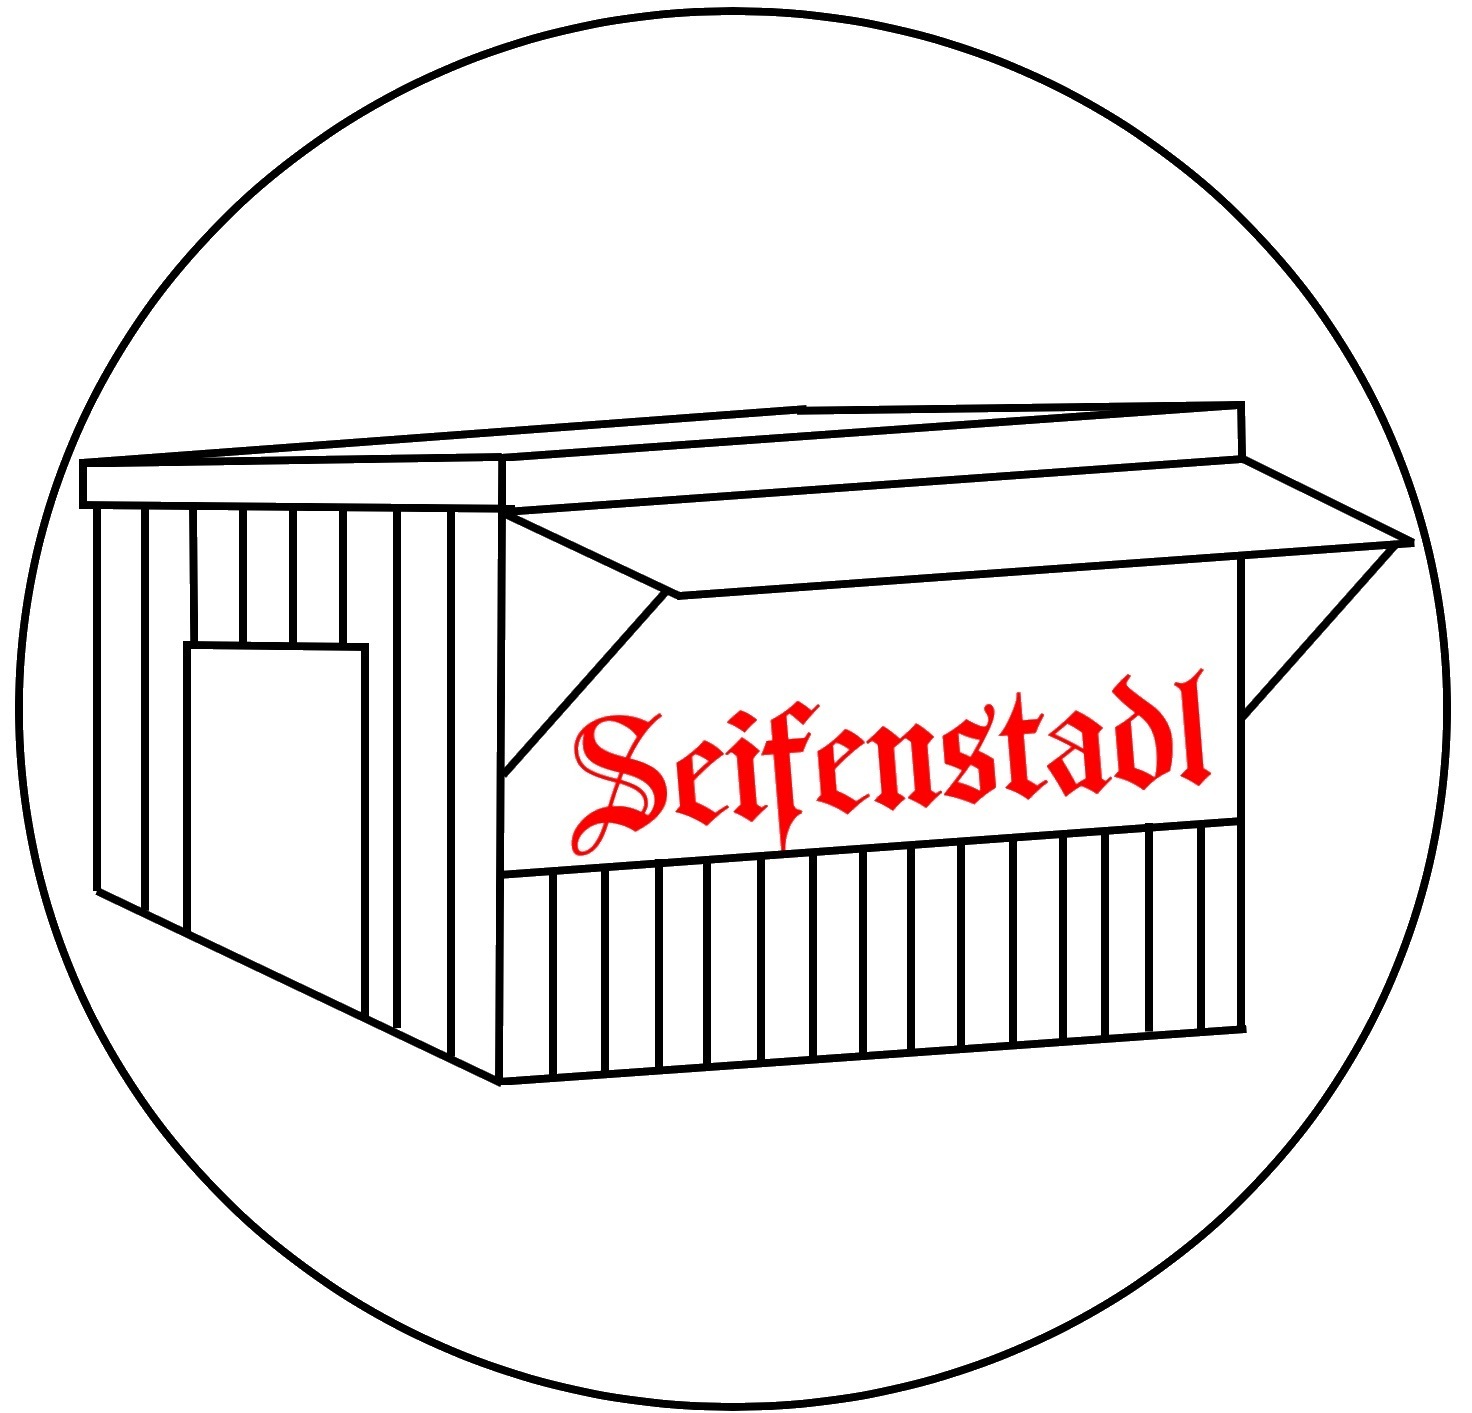 Seifenstadl - Ihr Seifenshop aus Augsburg